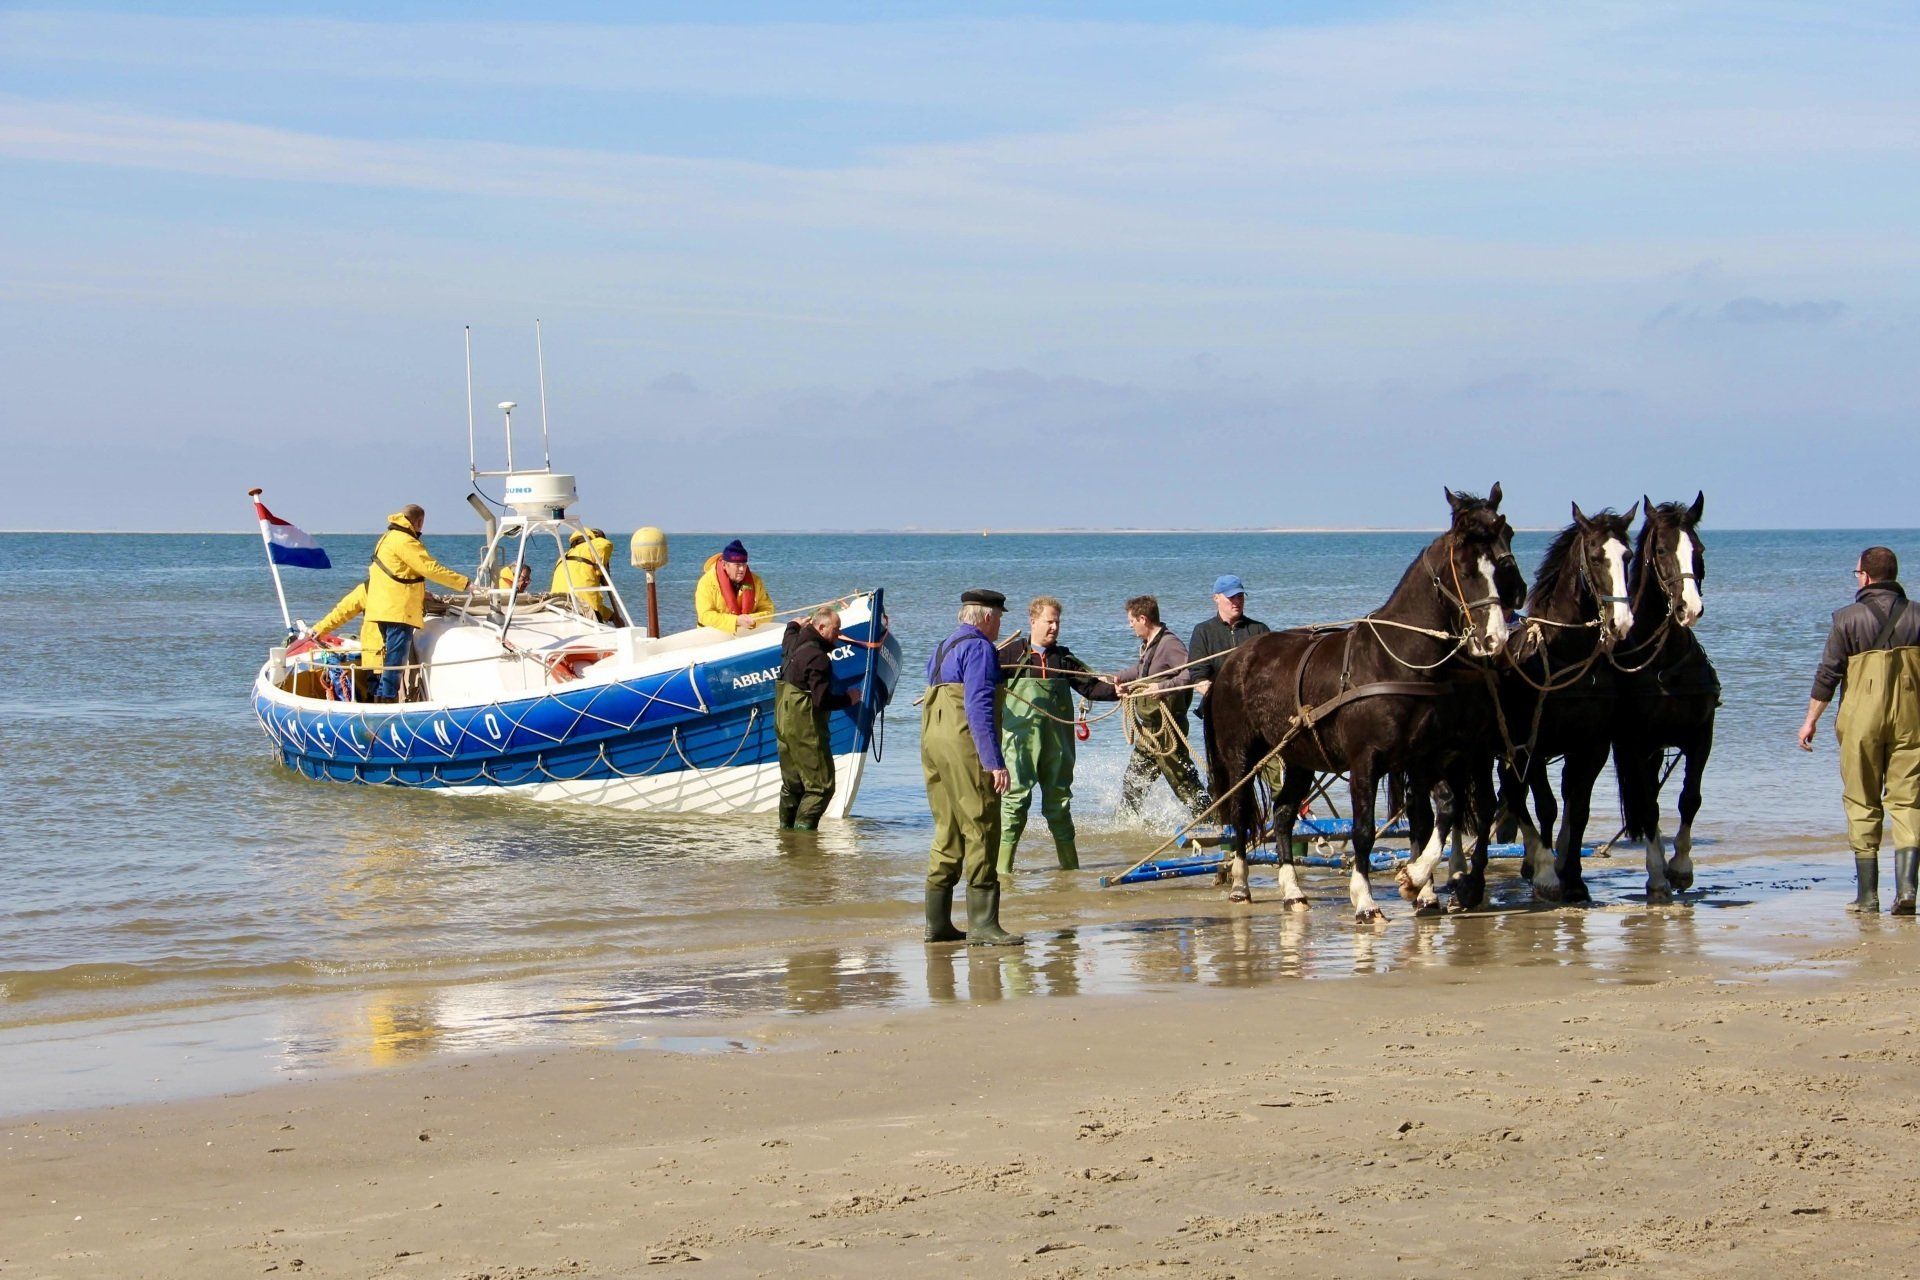 Paardenreddingsboot demonstratie Ameland door G Talsma